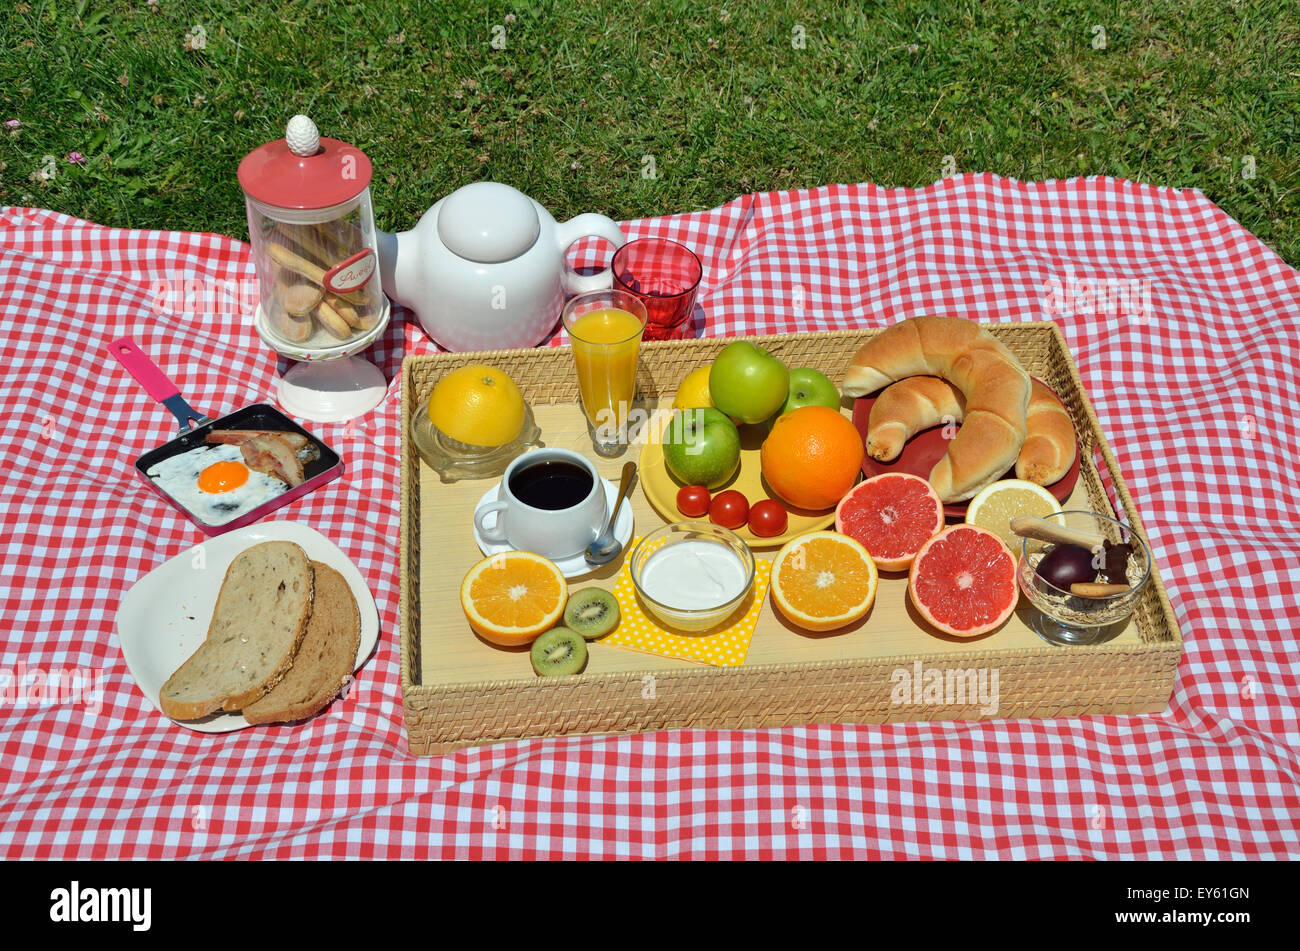 Leckeres Picknick-Frühstück oder Brunch mit frischen Kaffee, Schinken und  Ei, Croissants, Cookies, Müsli, Orangensaft und Obst Stockfotografie - Alamy